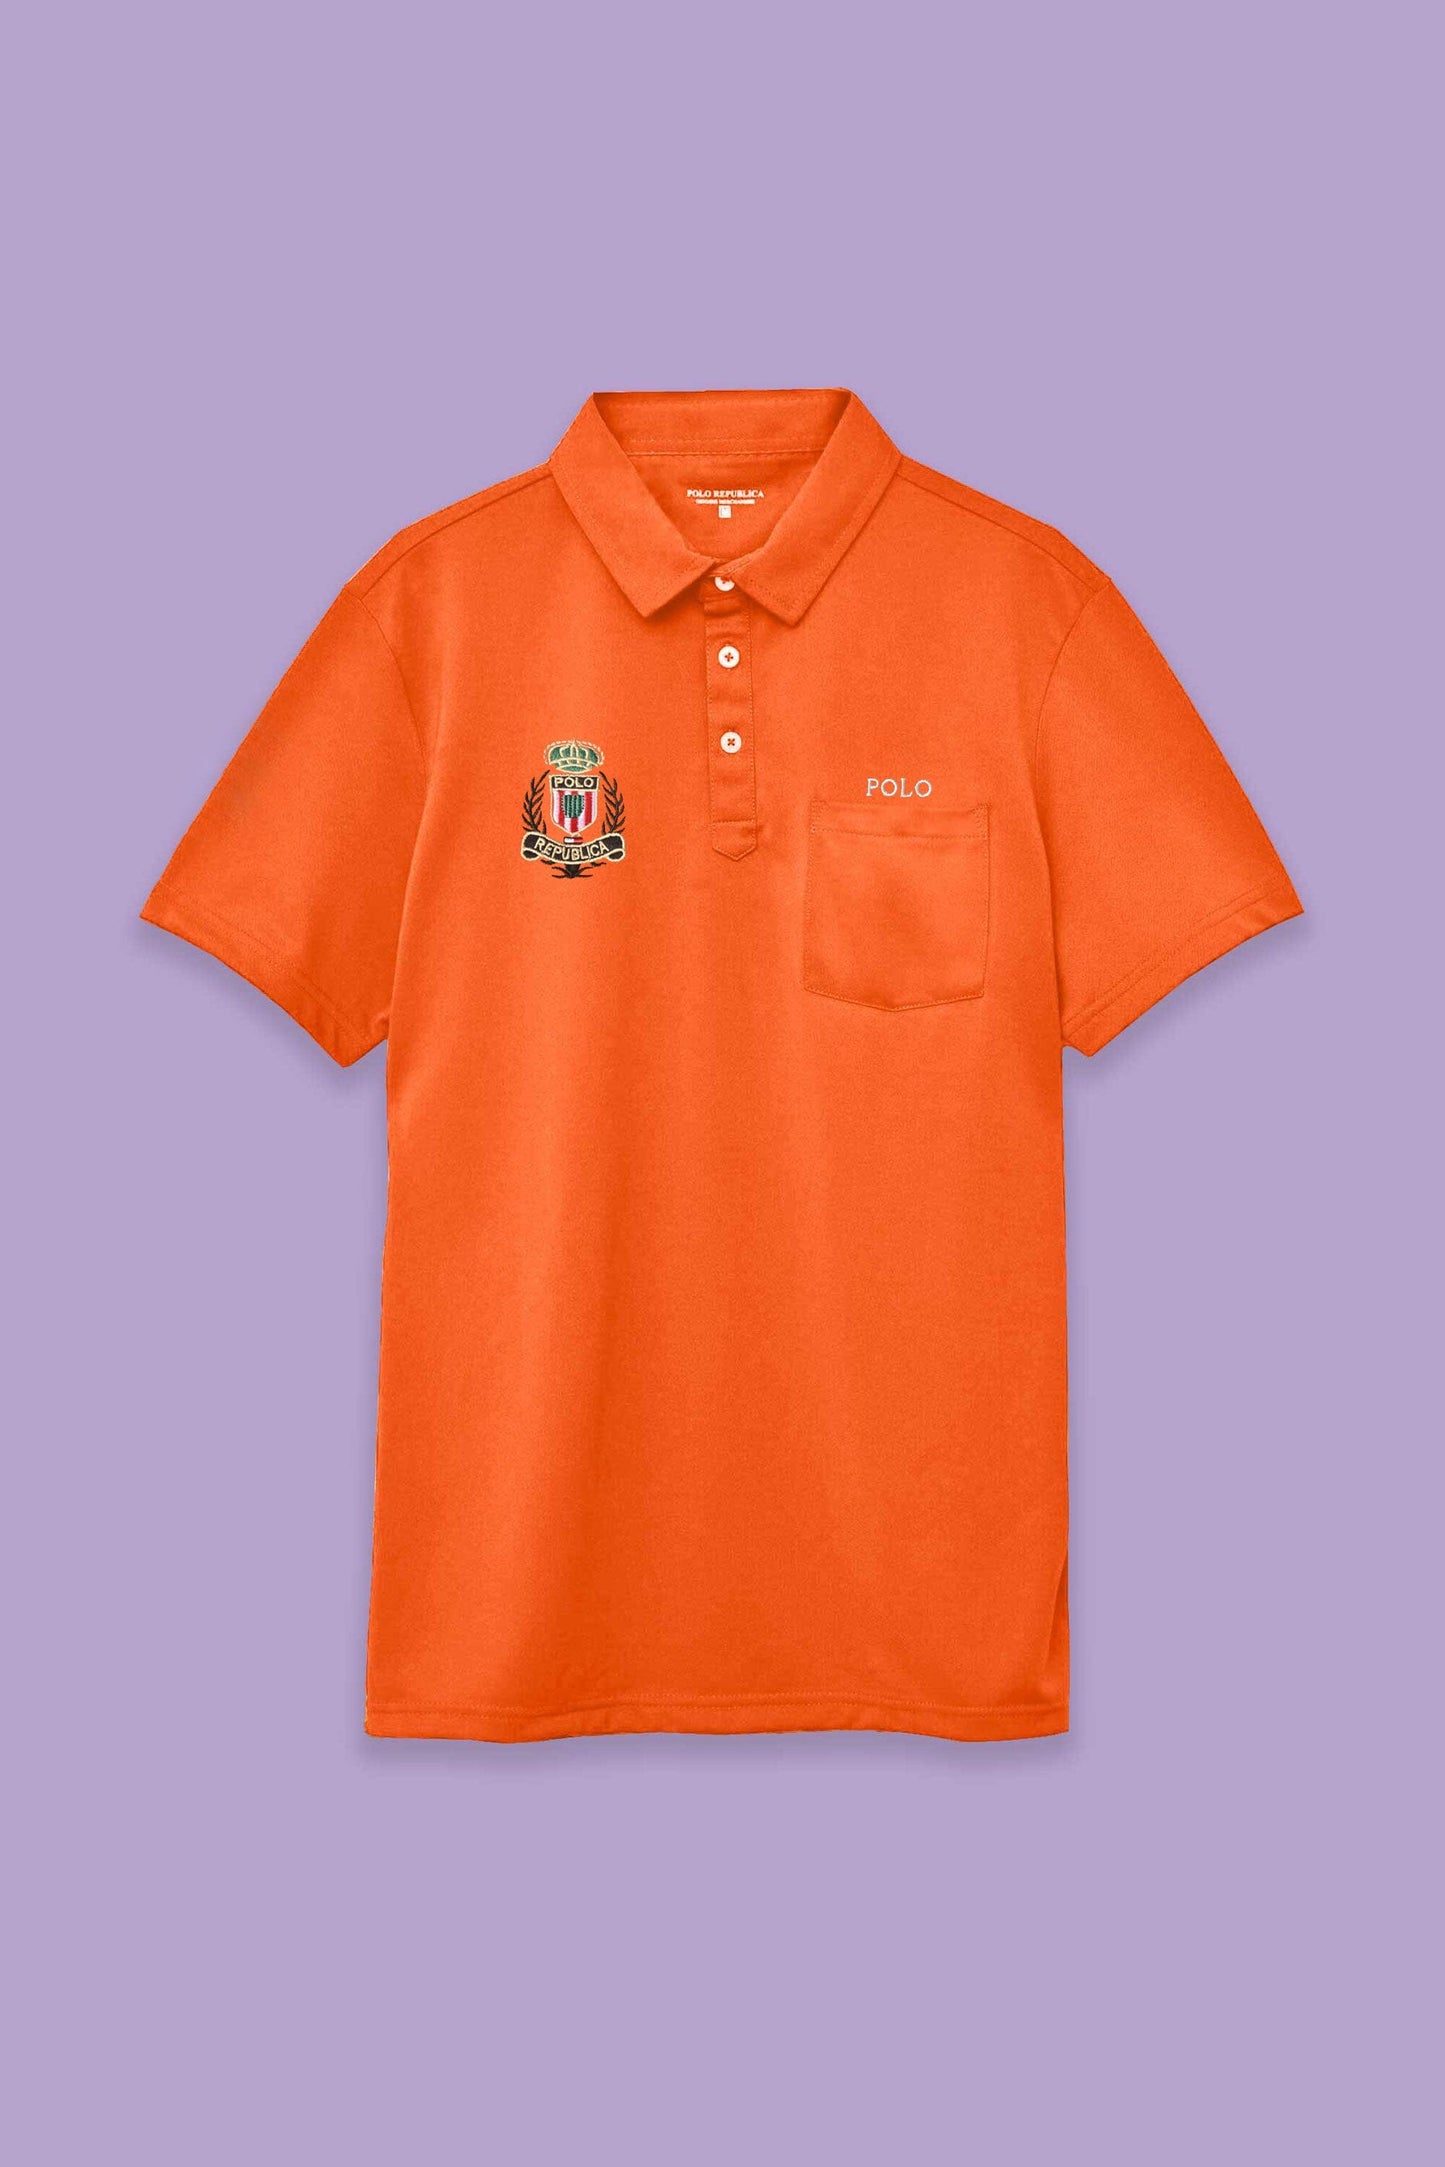 Polo Republica Men's Polo Crest Embroidered Pocket Polo Shirt Men's Polo Shirt Polo Republica 